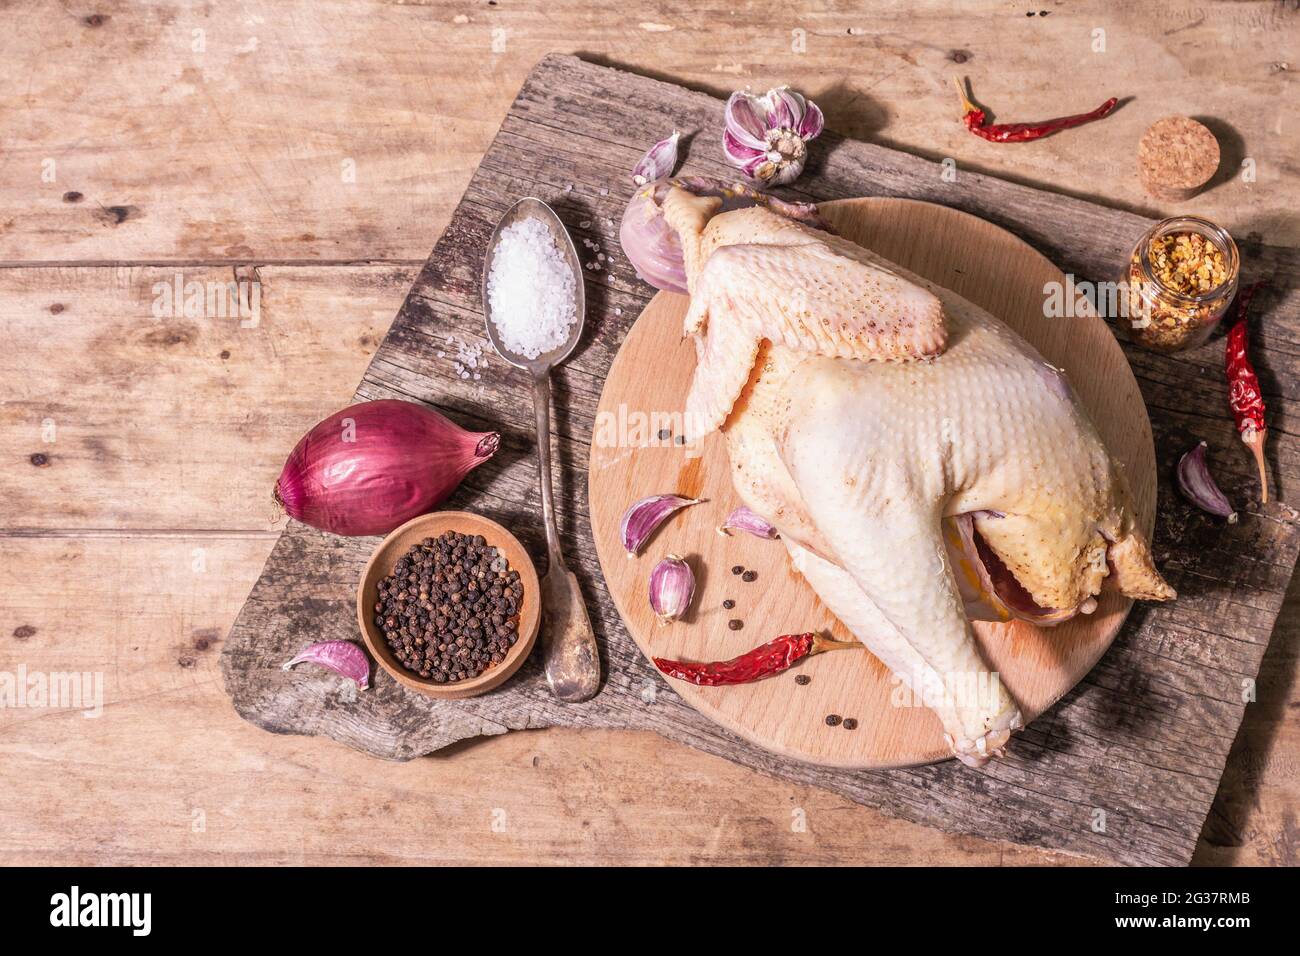 Carcasse brute de poulet entier pour un mode de vie alimentaire sain. Oiseau de ferme à aire libre avec oignon rouge, gousses d'ail, épices et sel de mer. Une lumière dure tendance, d Banque D'Images